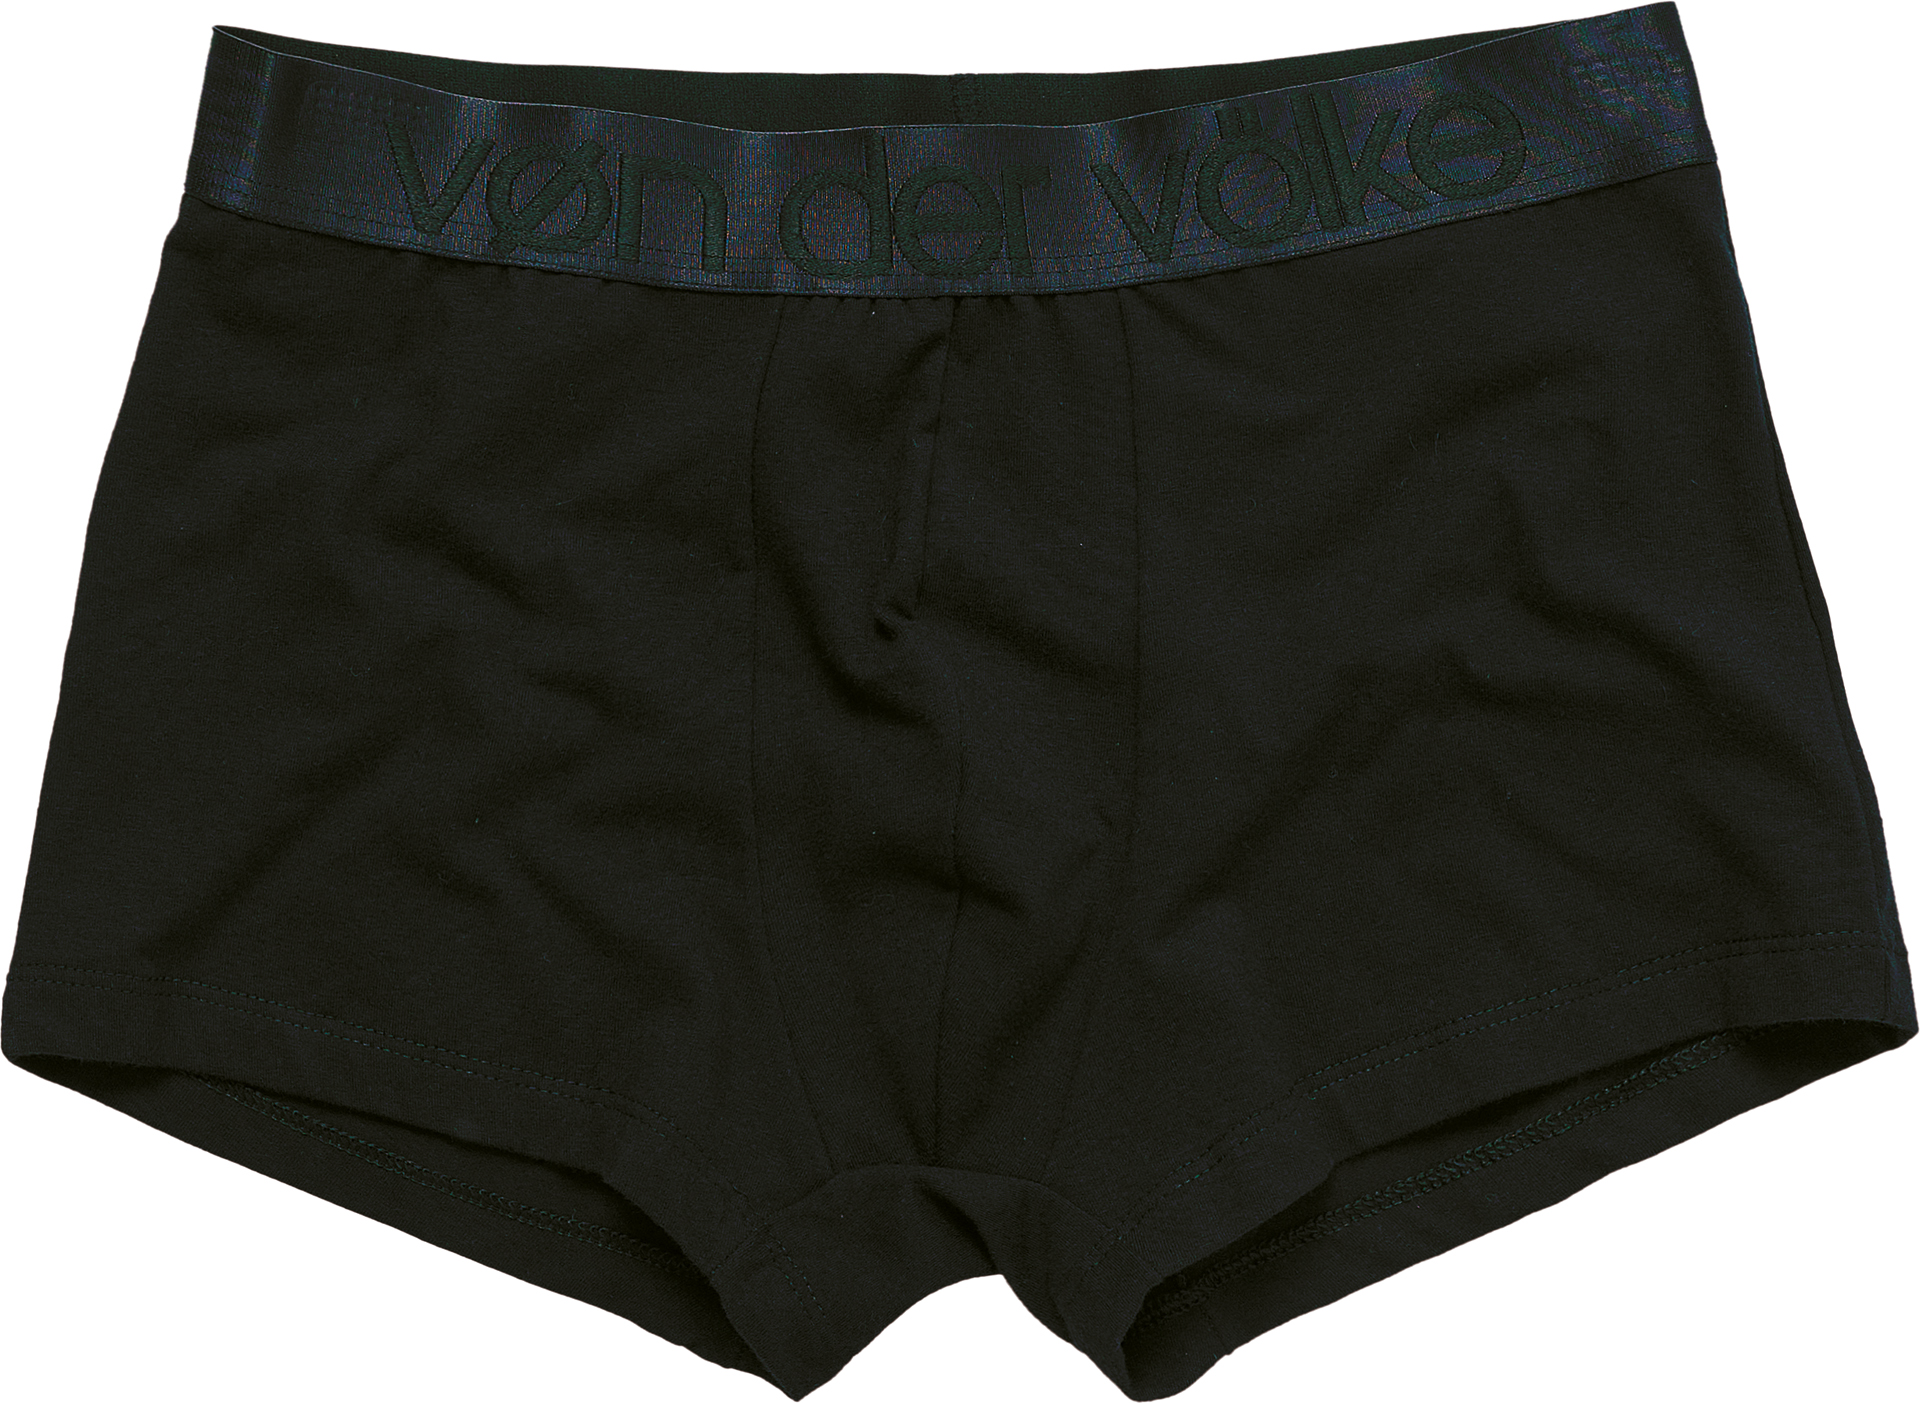 Kit Cueca Boxer Underwear C/ 8 Peças - Branco+Preto